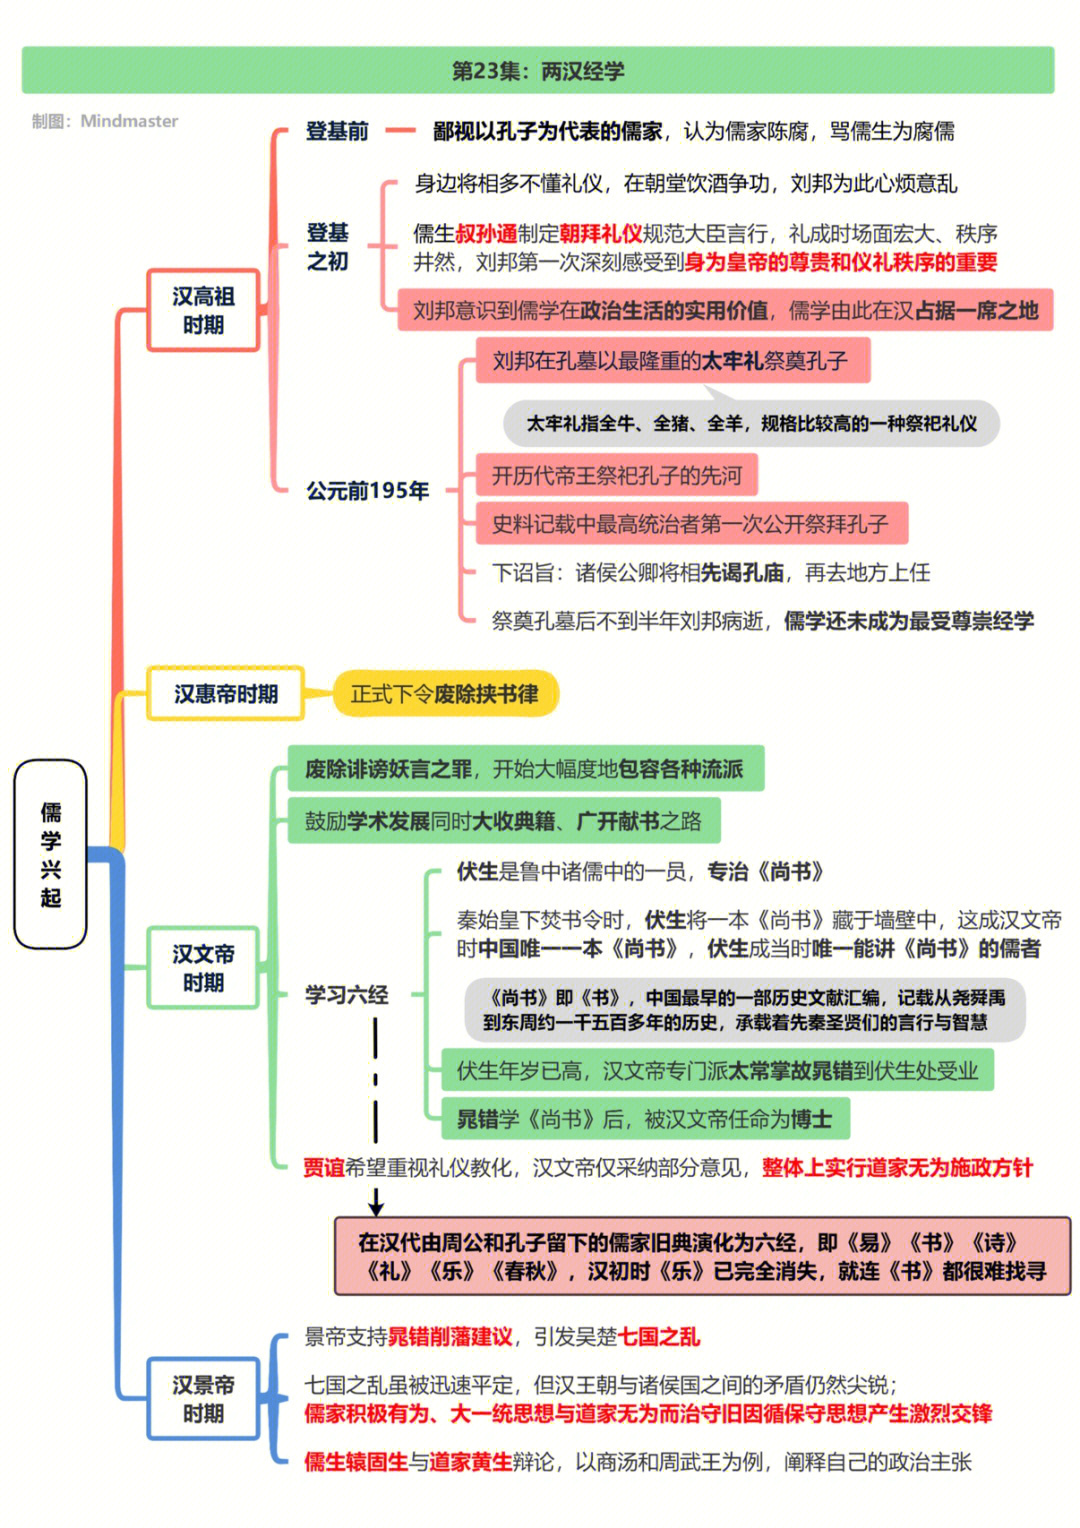 中国通史框架图笔记图片